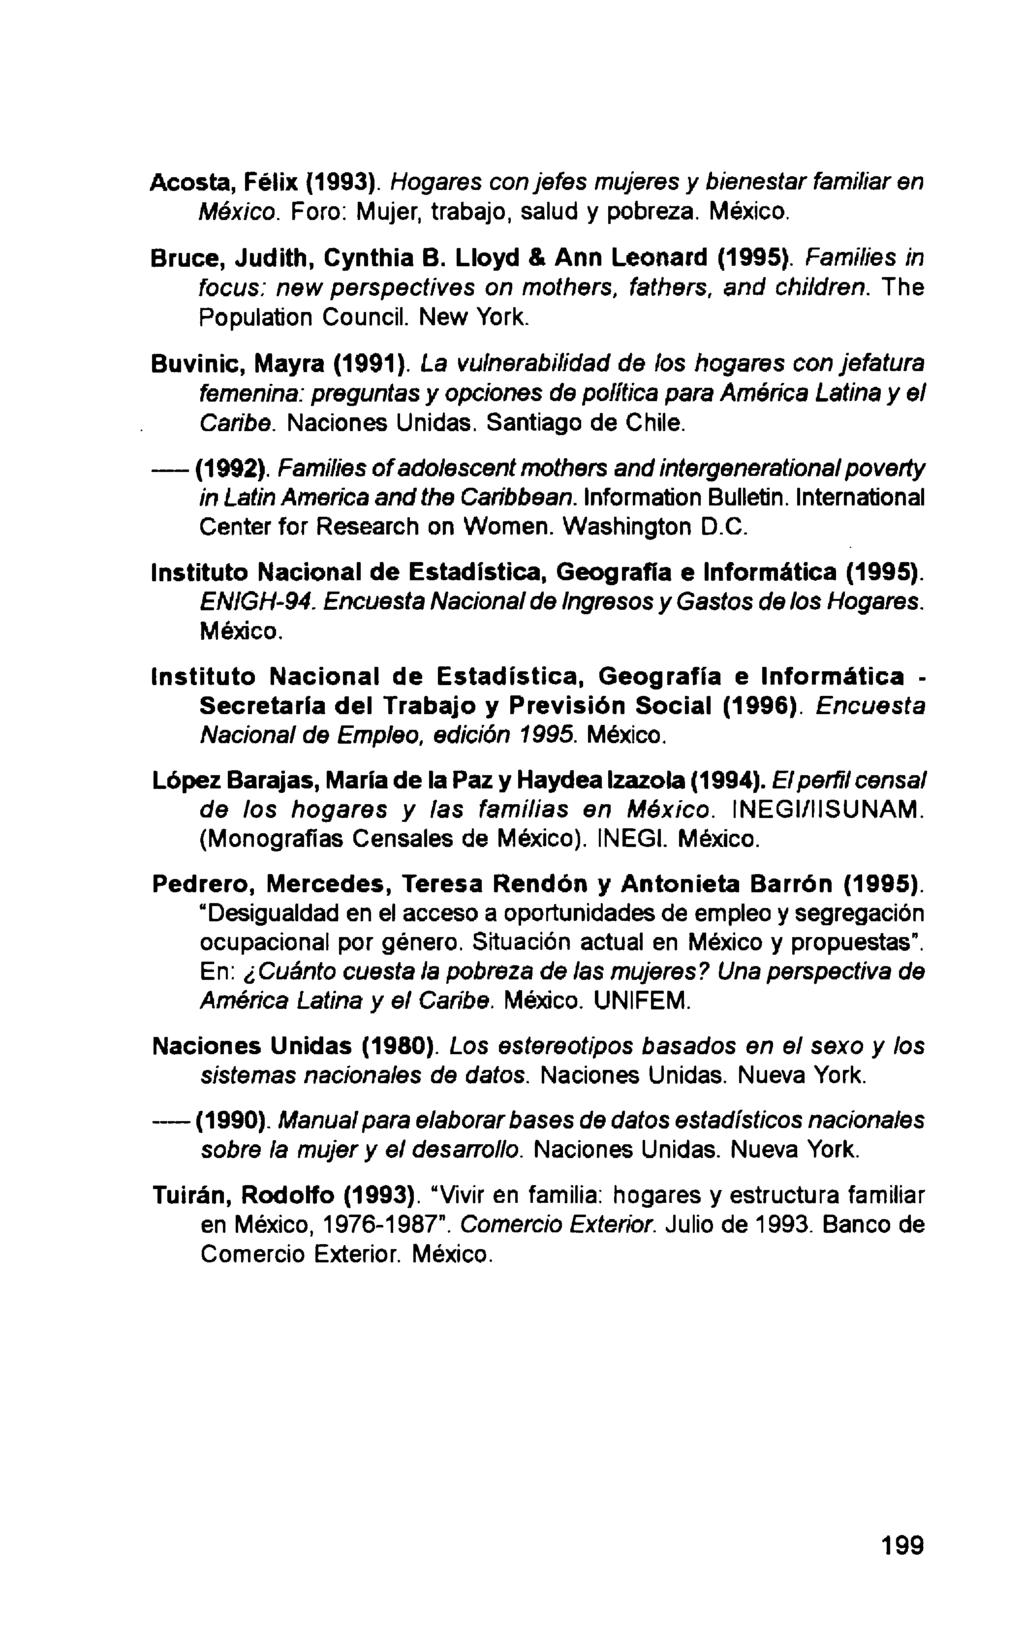 Acosta, Félix (1993). Hogares con jefes mujeres y bienestar familiar en México. Foro: Mujer, trabajo, salud y pobreza. México. Bruce, Judith, Cynthia B. Lloyd & Ann Leonard (1995).